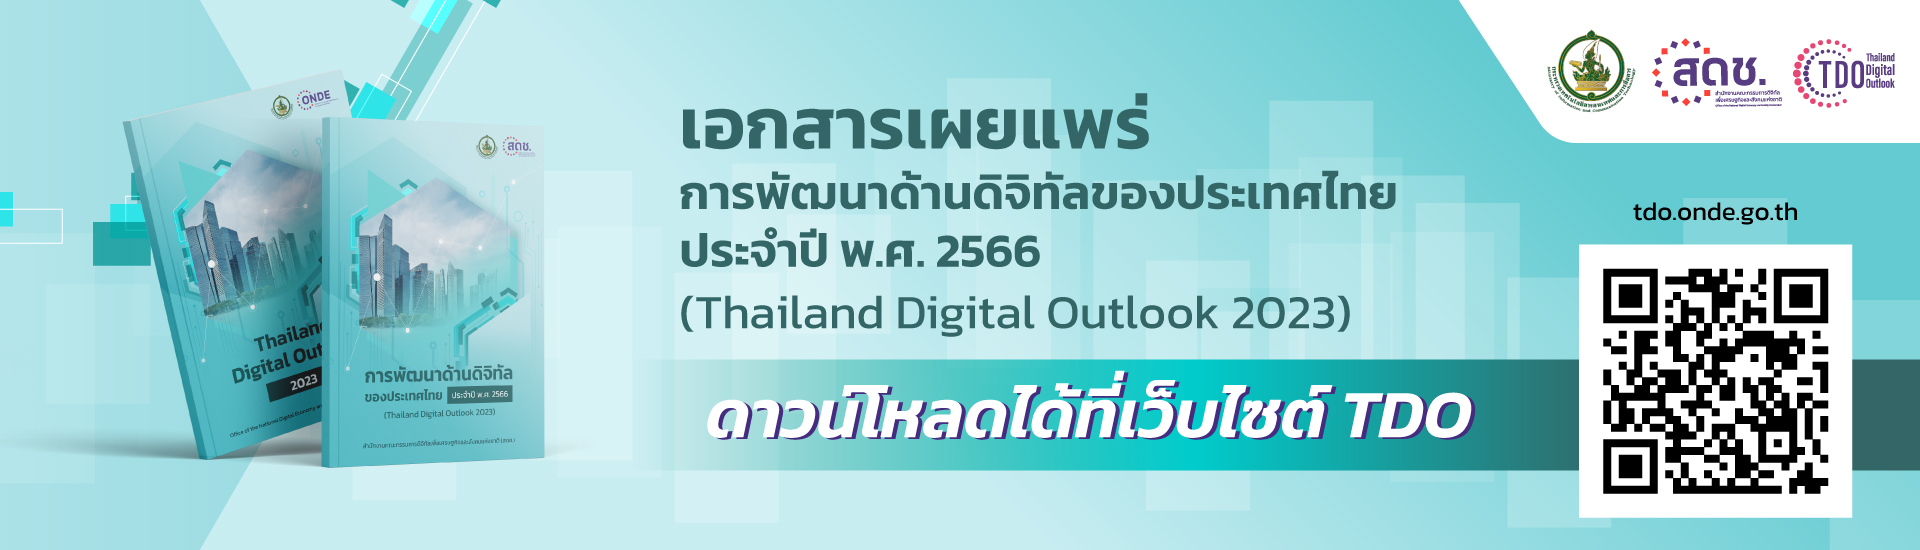 การสำรวจและจัดทำดัชนีตัวชี้วัดด้านการพัฒนาดิจิทัลของประเทศไทย ปี 2565 (Thailand Digital Outlook 2022)